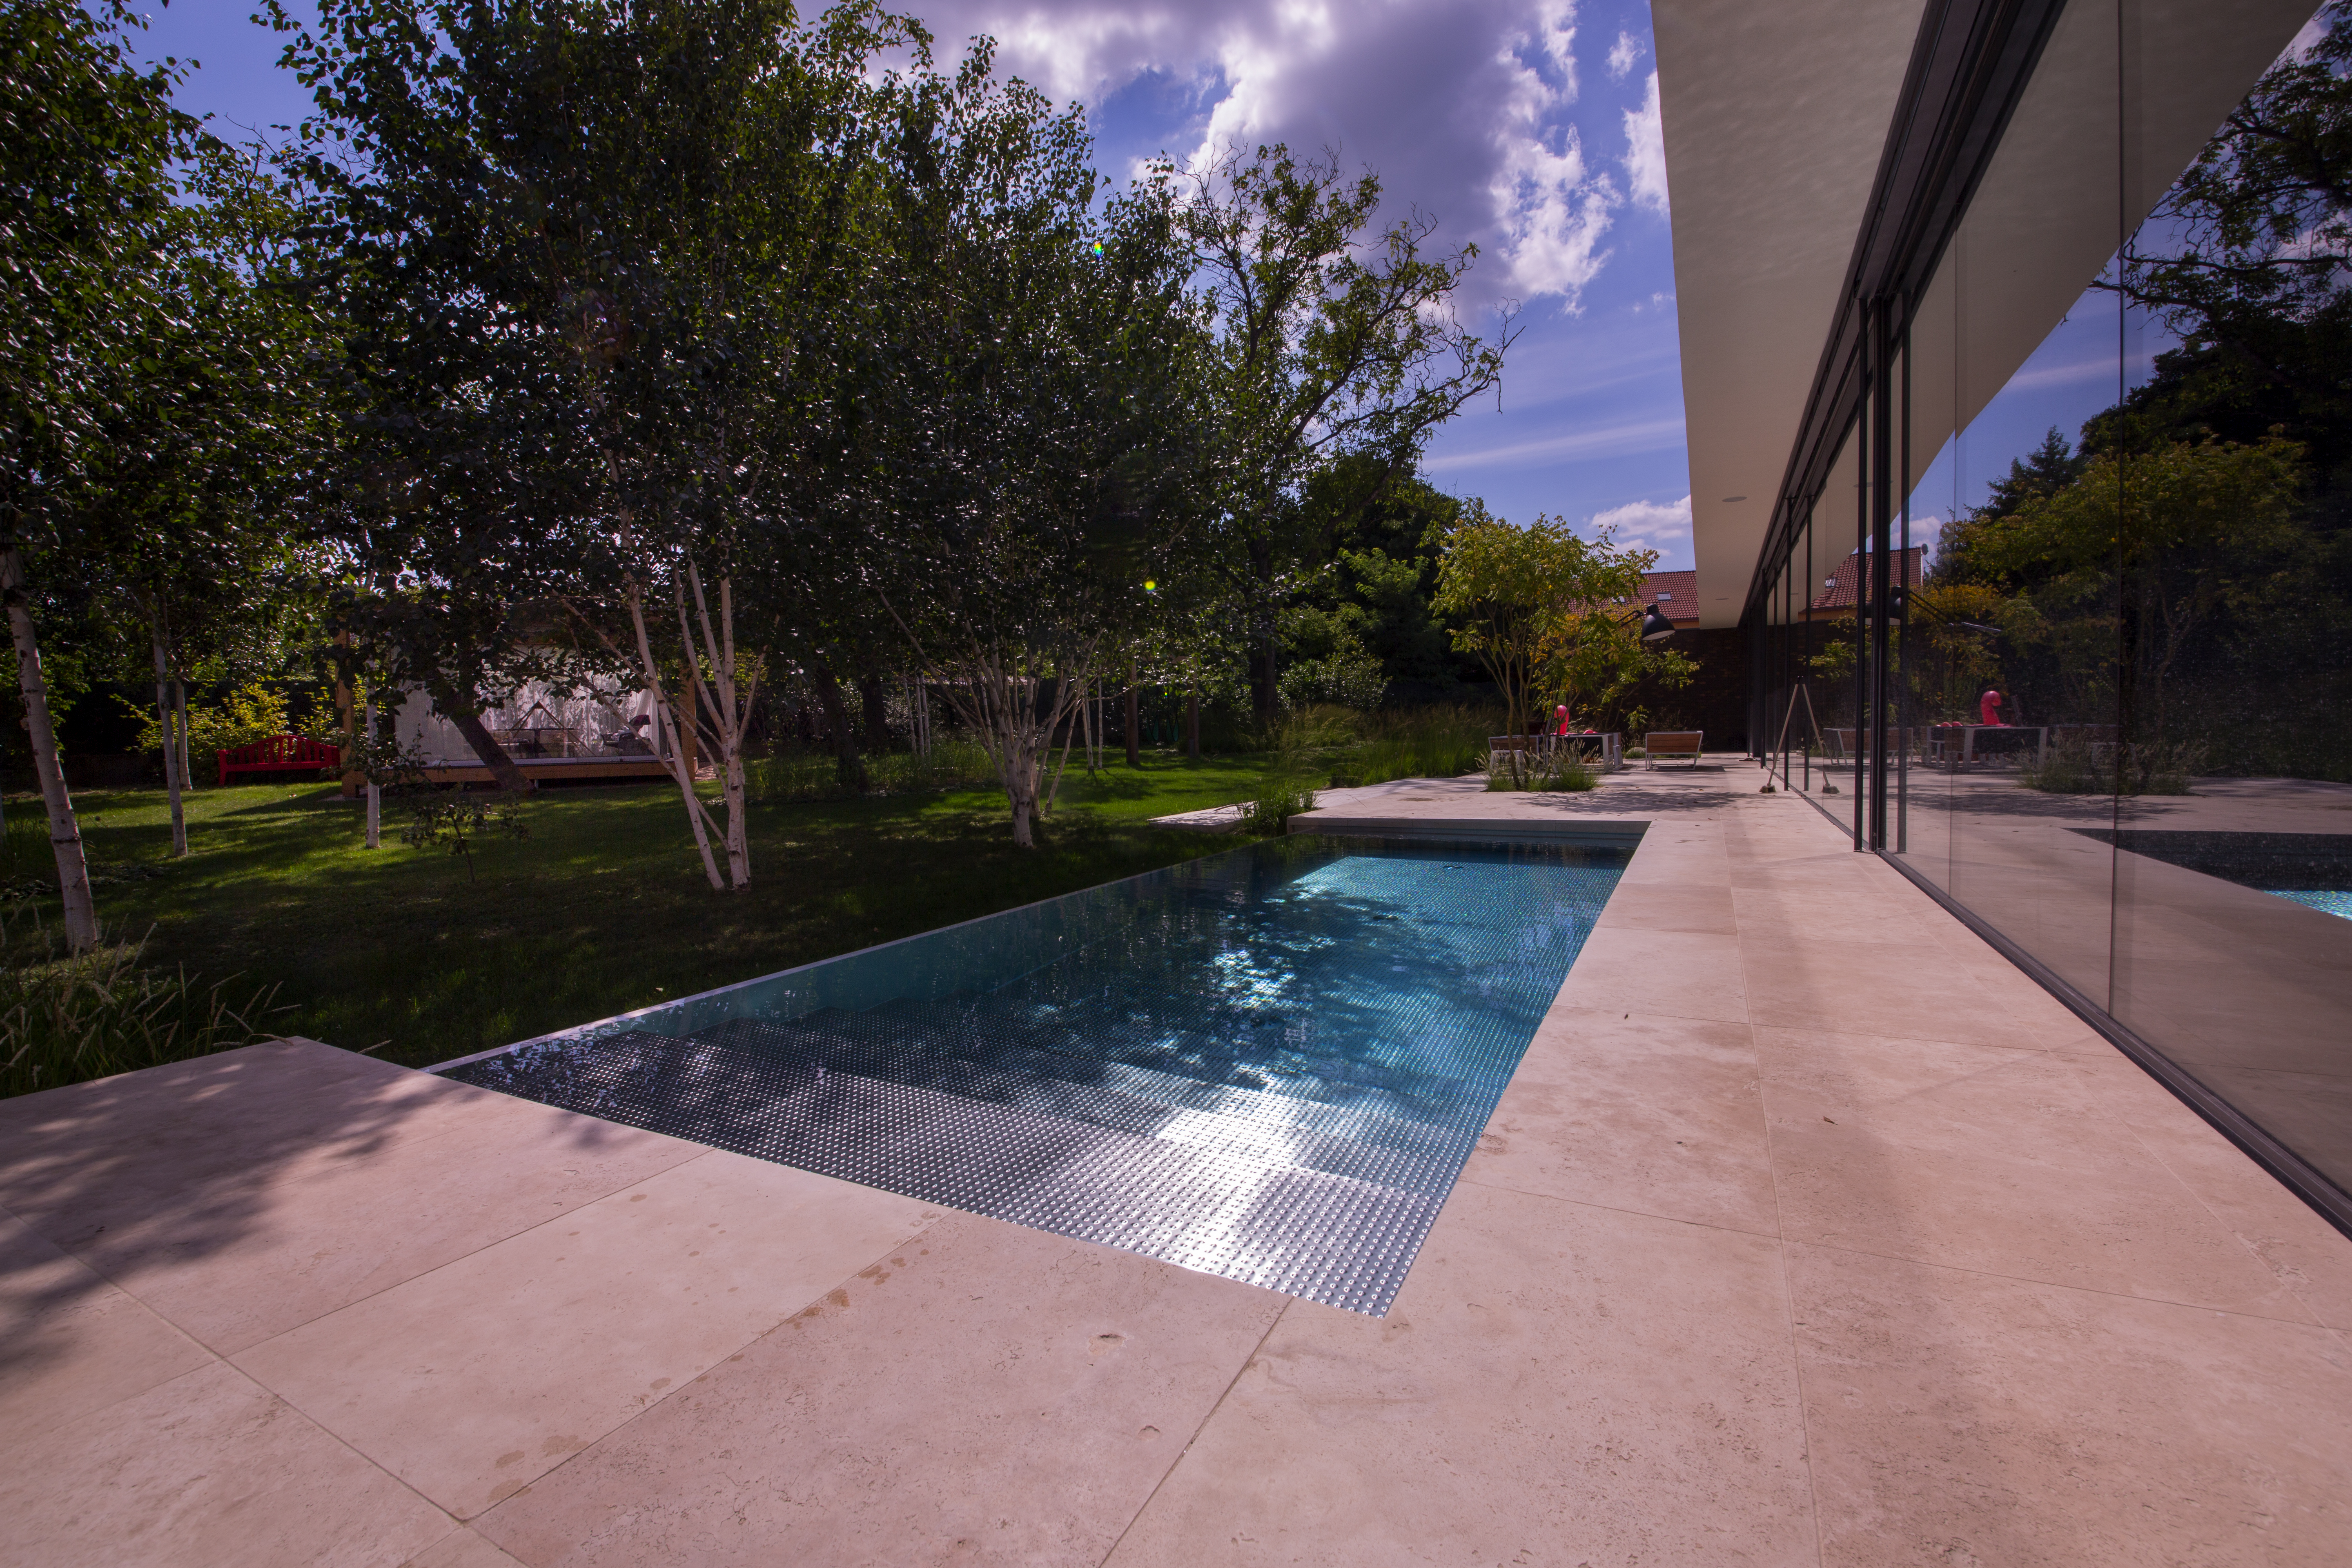  Сад роскошной современной виллы с бассейном IMAGINOX